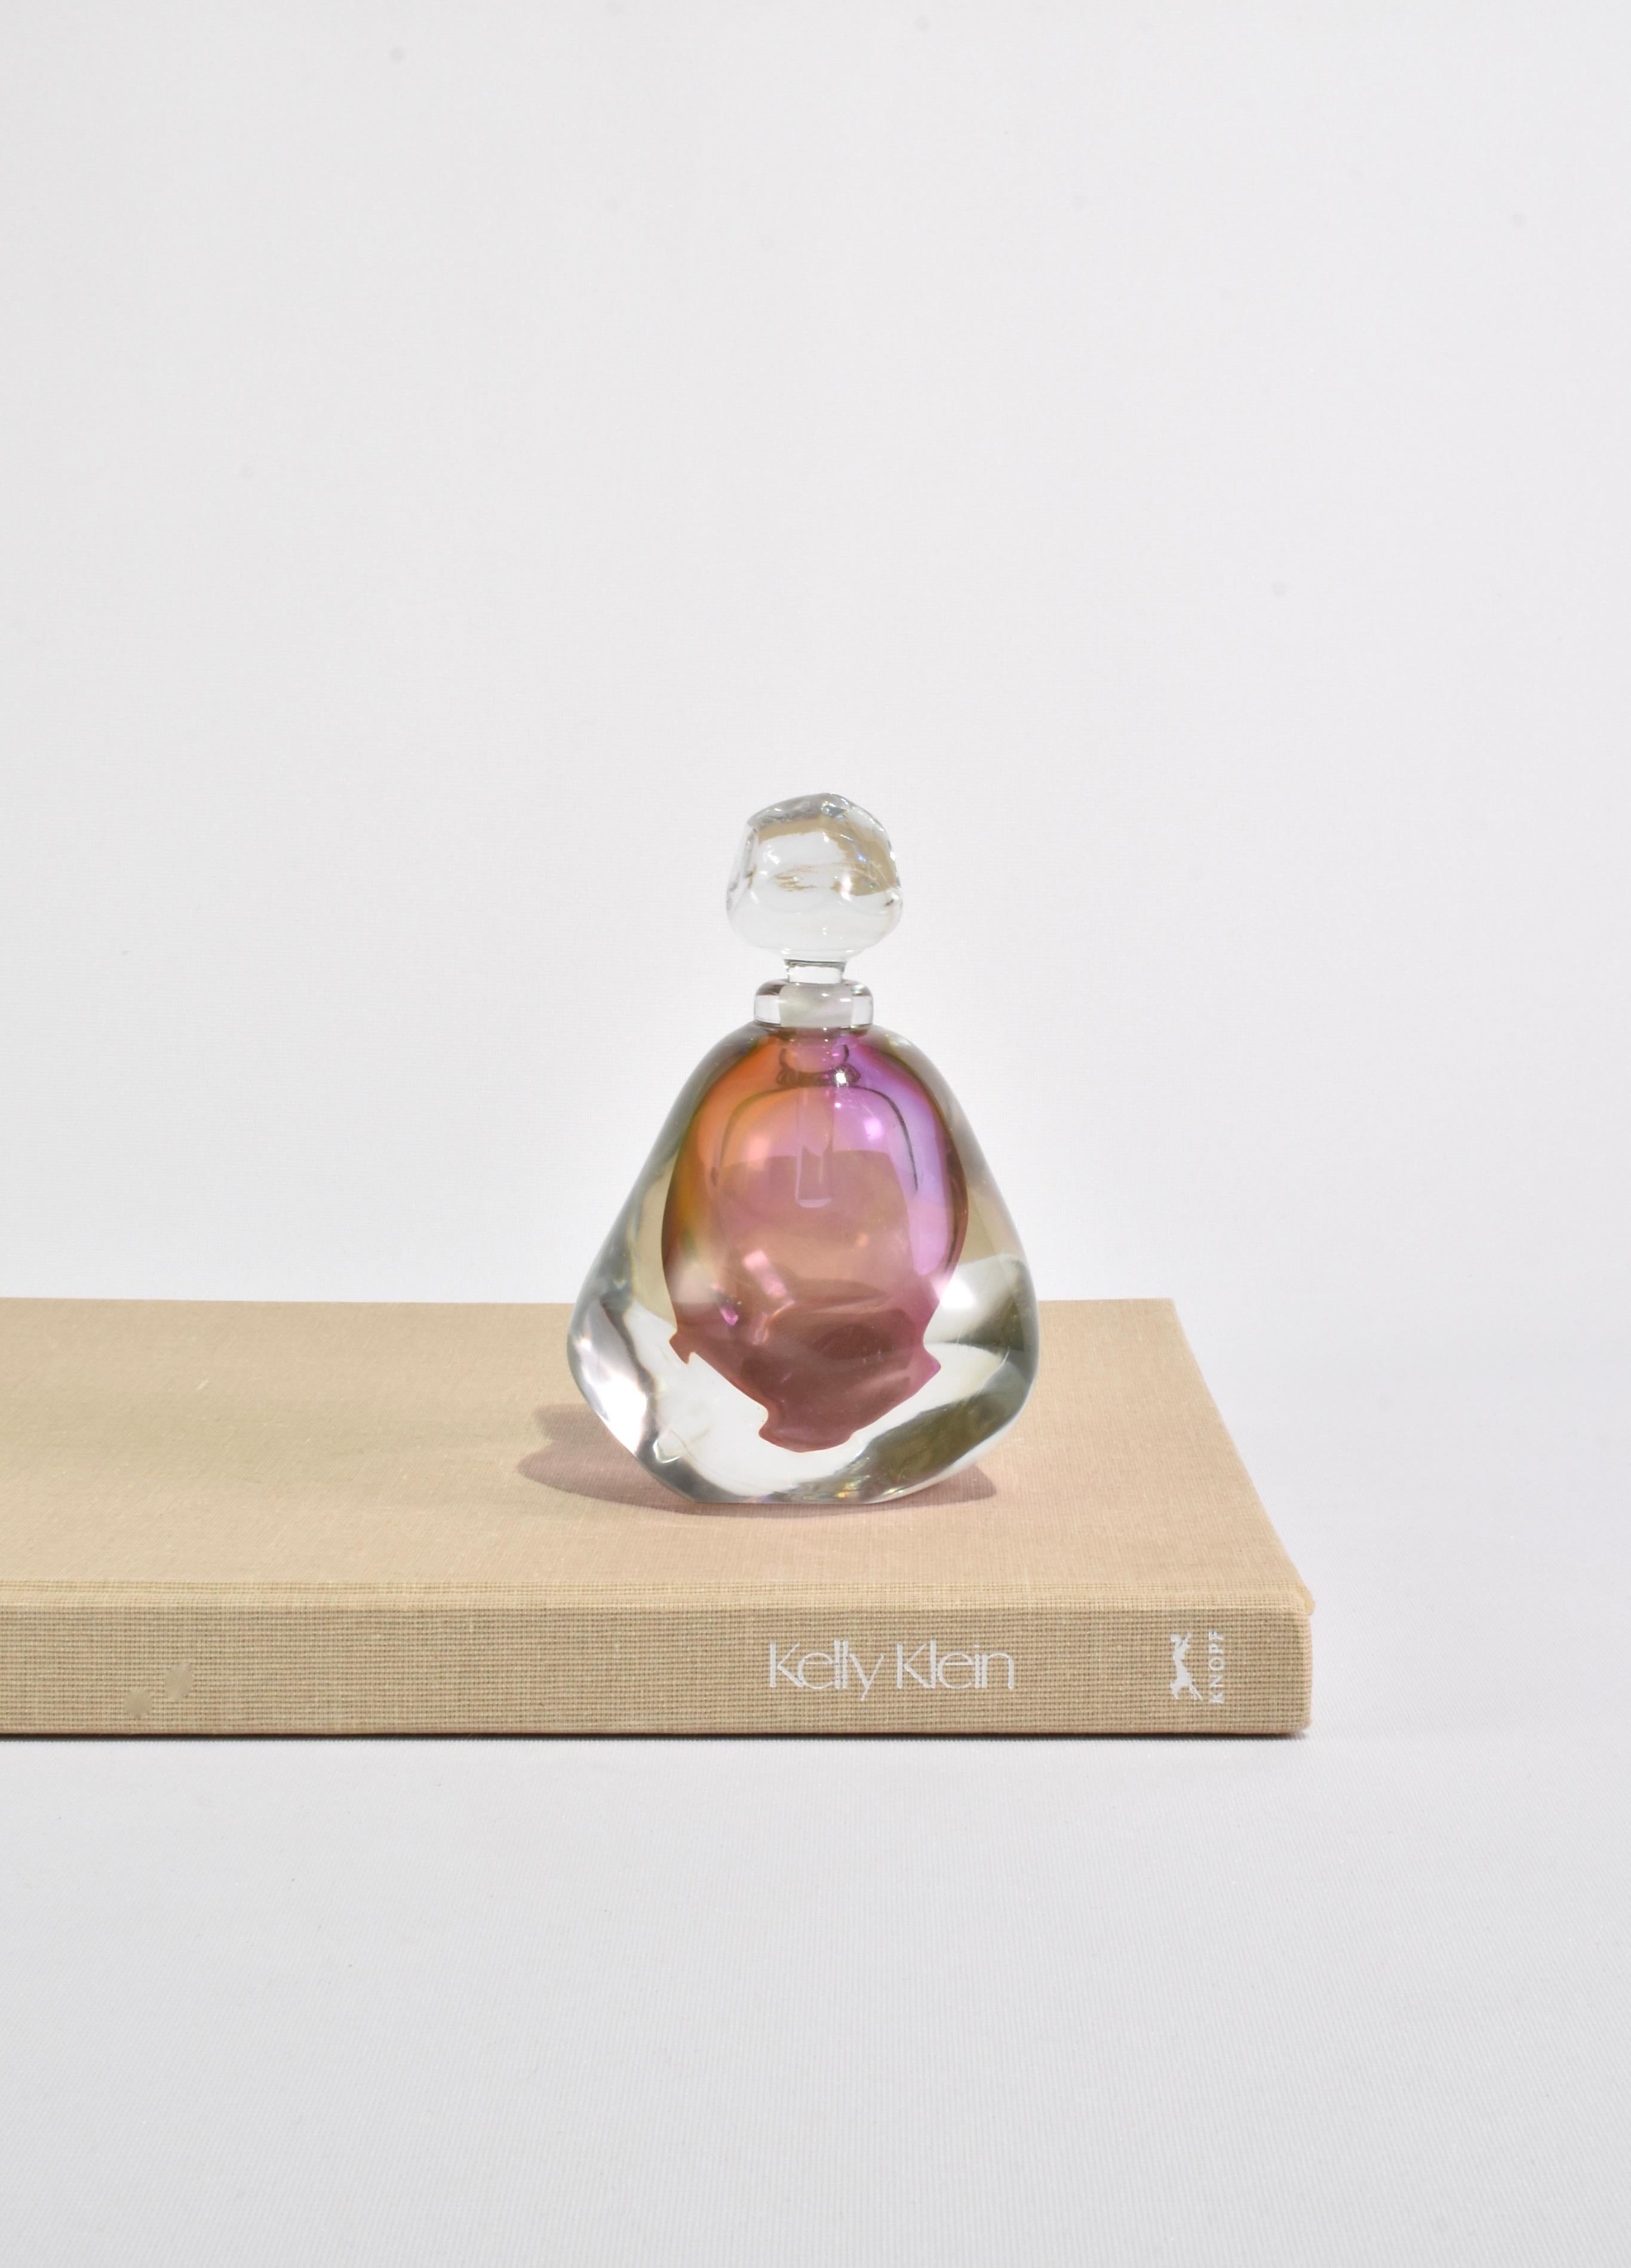 Superbe flacon de parfum en verre soufflé coloré de forme organique. Non signé, attribué à Leon Applebaum.